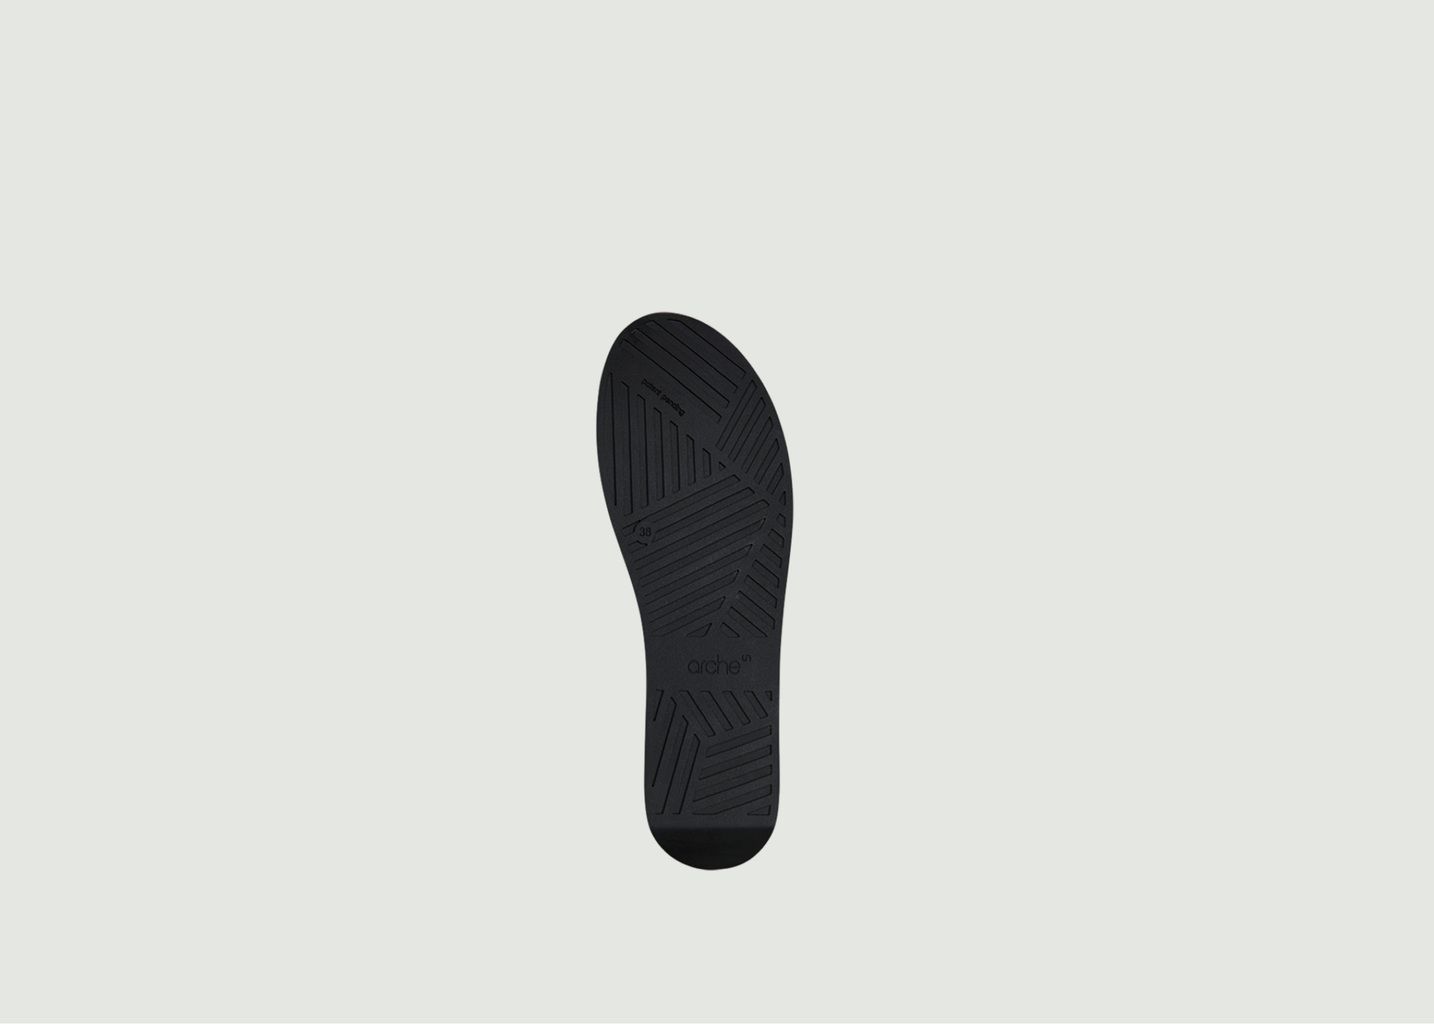 Leather wedge sandals Myakki - Arche